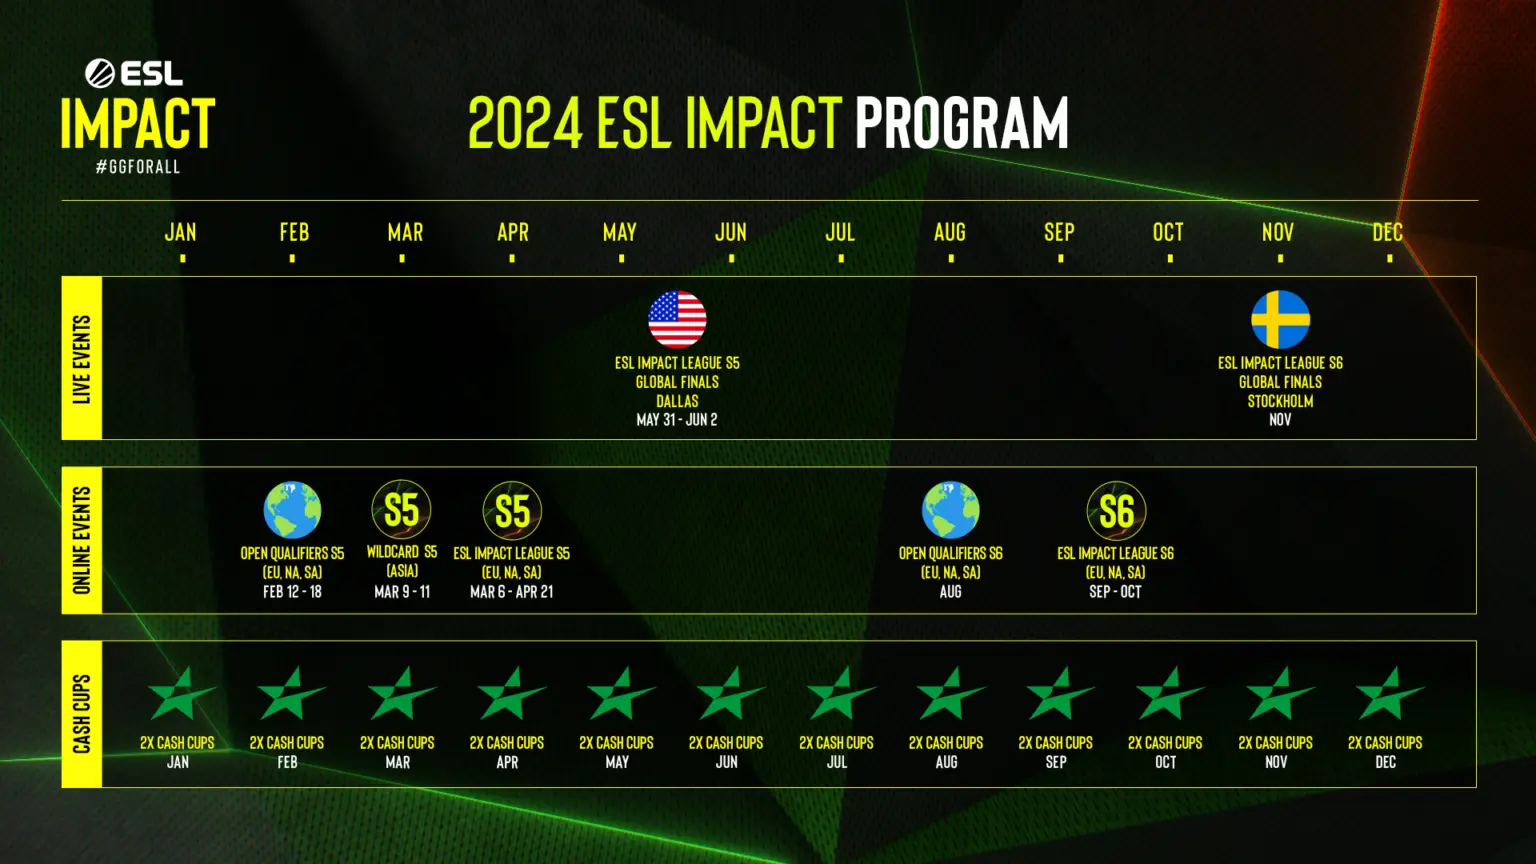 ESL Impact Program for 2024